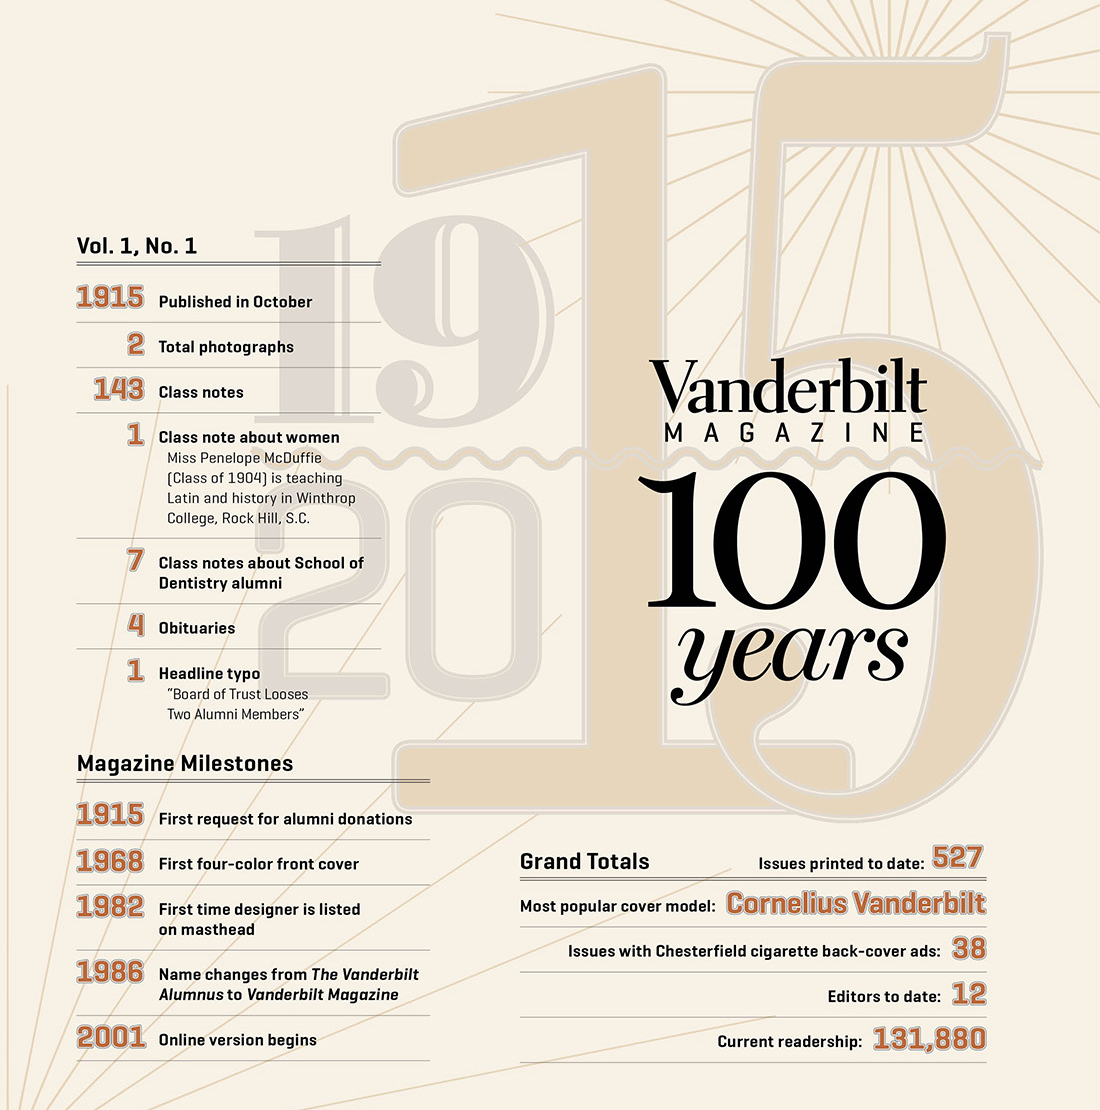 infographic about Vanderbilt Magazine